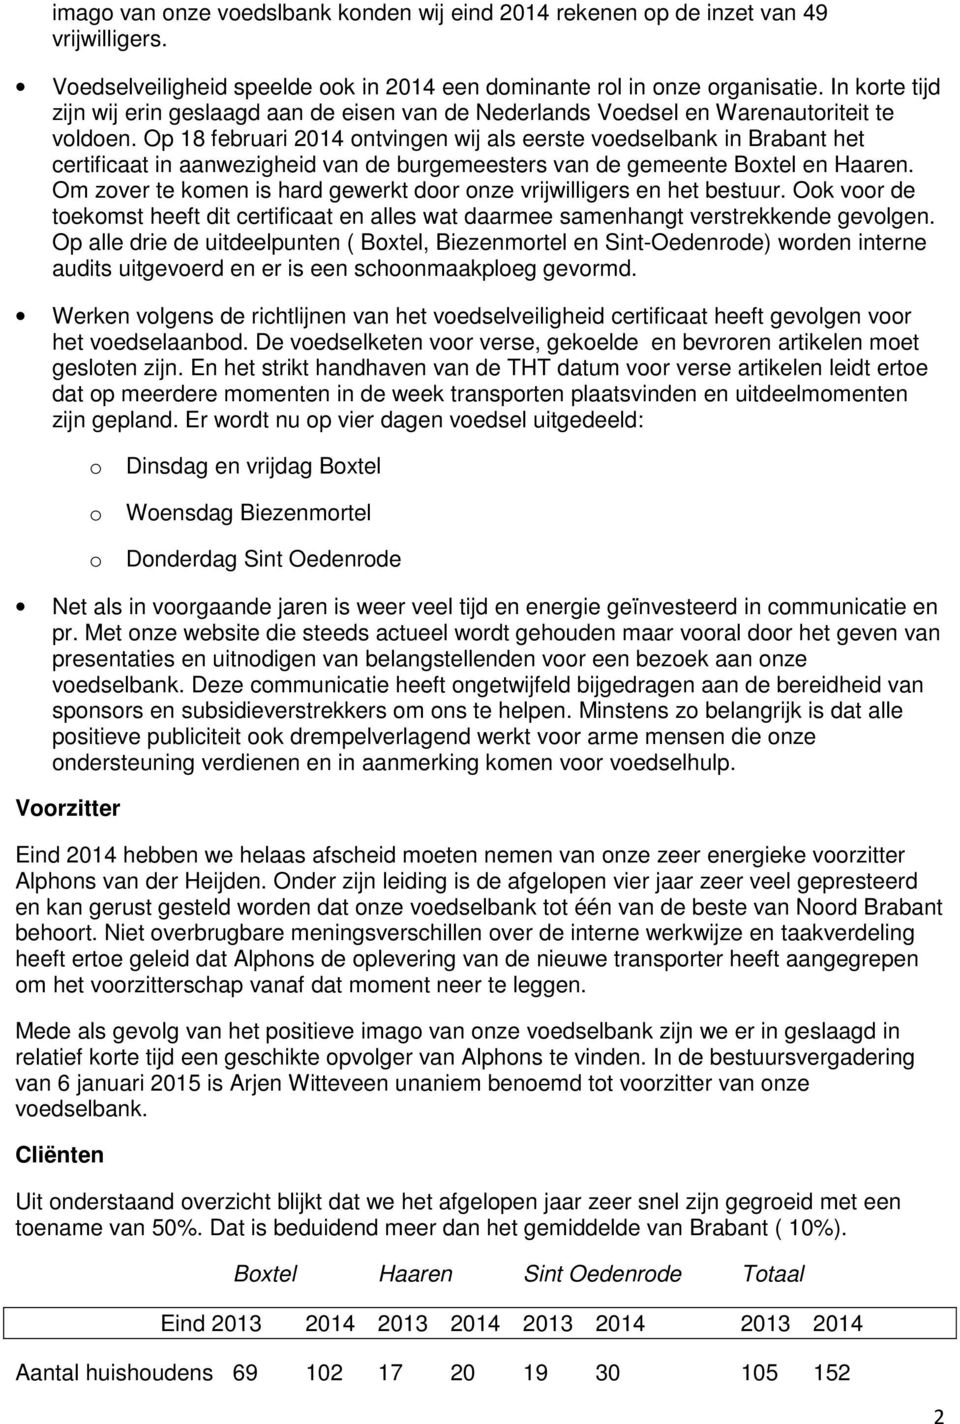 Op 18 februari 2014 ontvingen wij als eerste voedselbank in Brabant het certificaat in aanwezigheid van de burgemeesters van de gemeente Boxtel en Haaren.